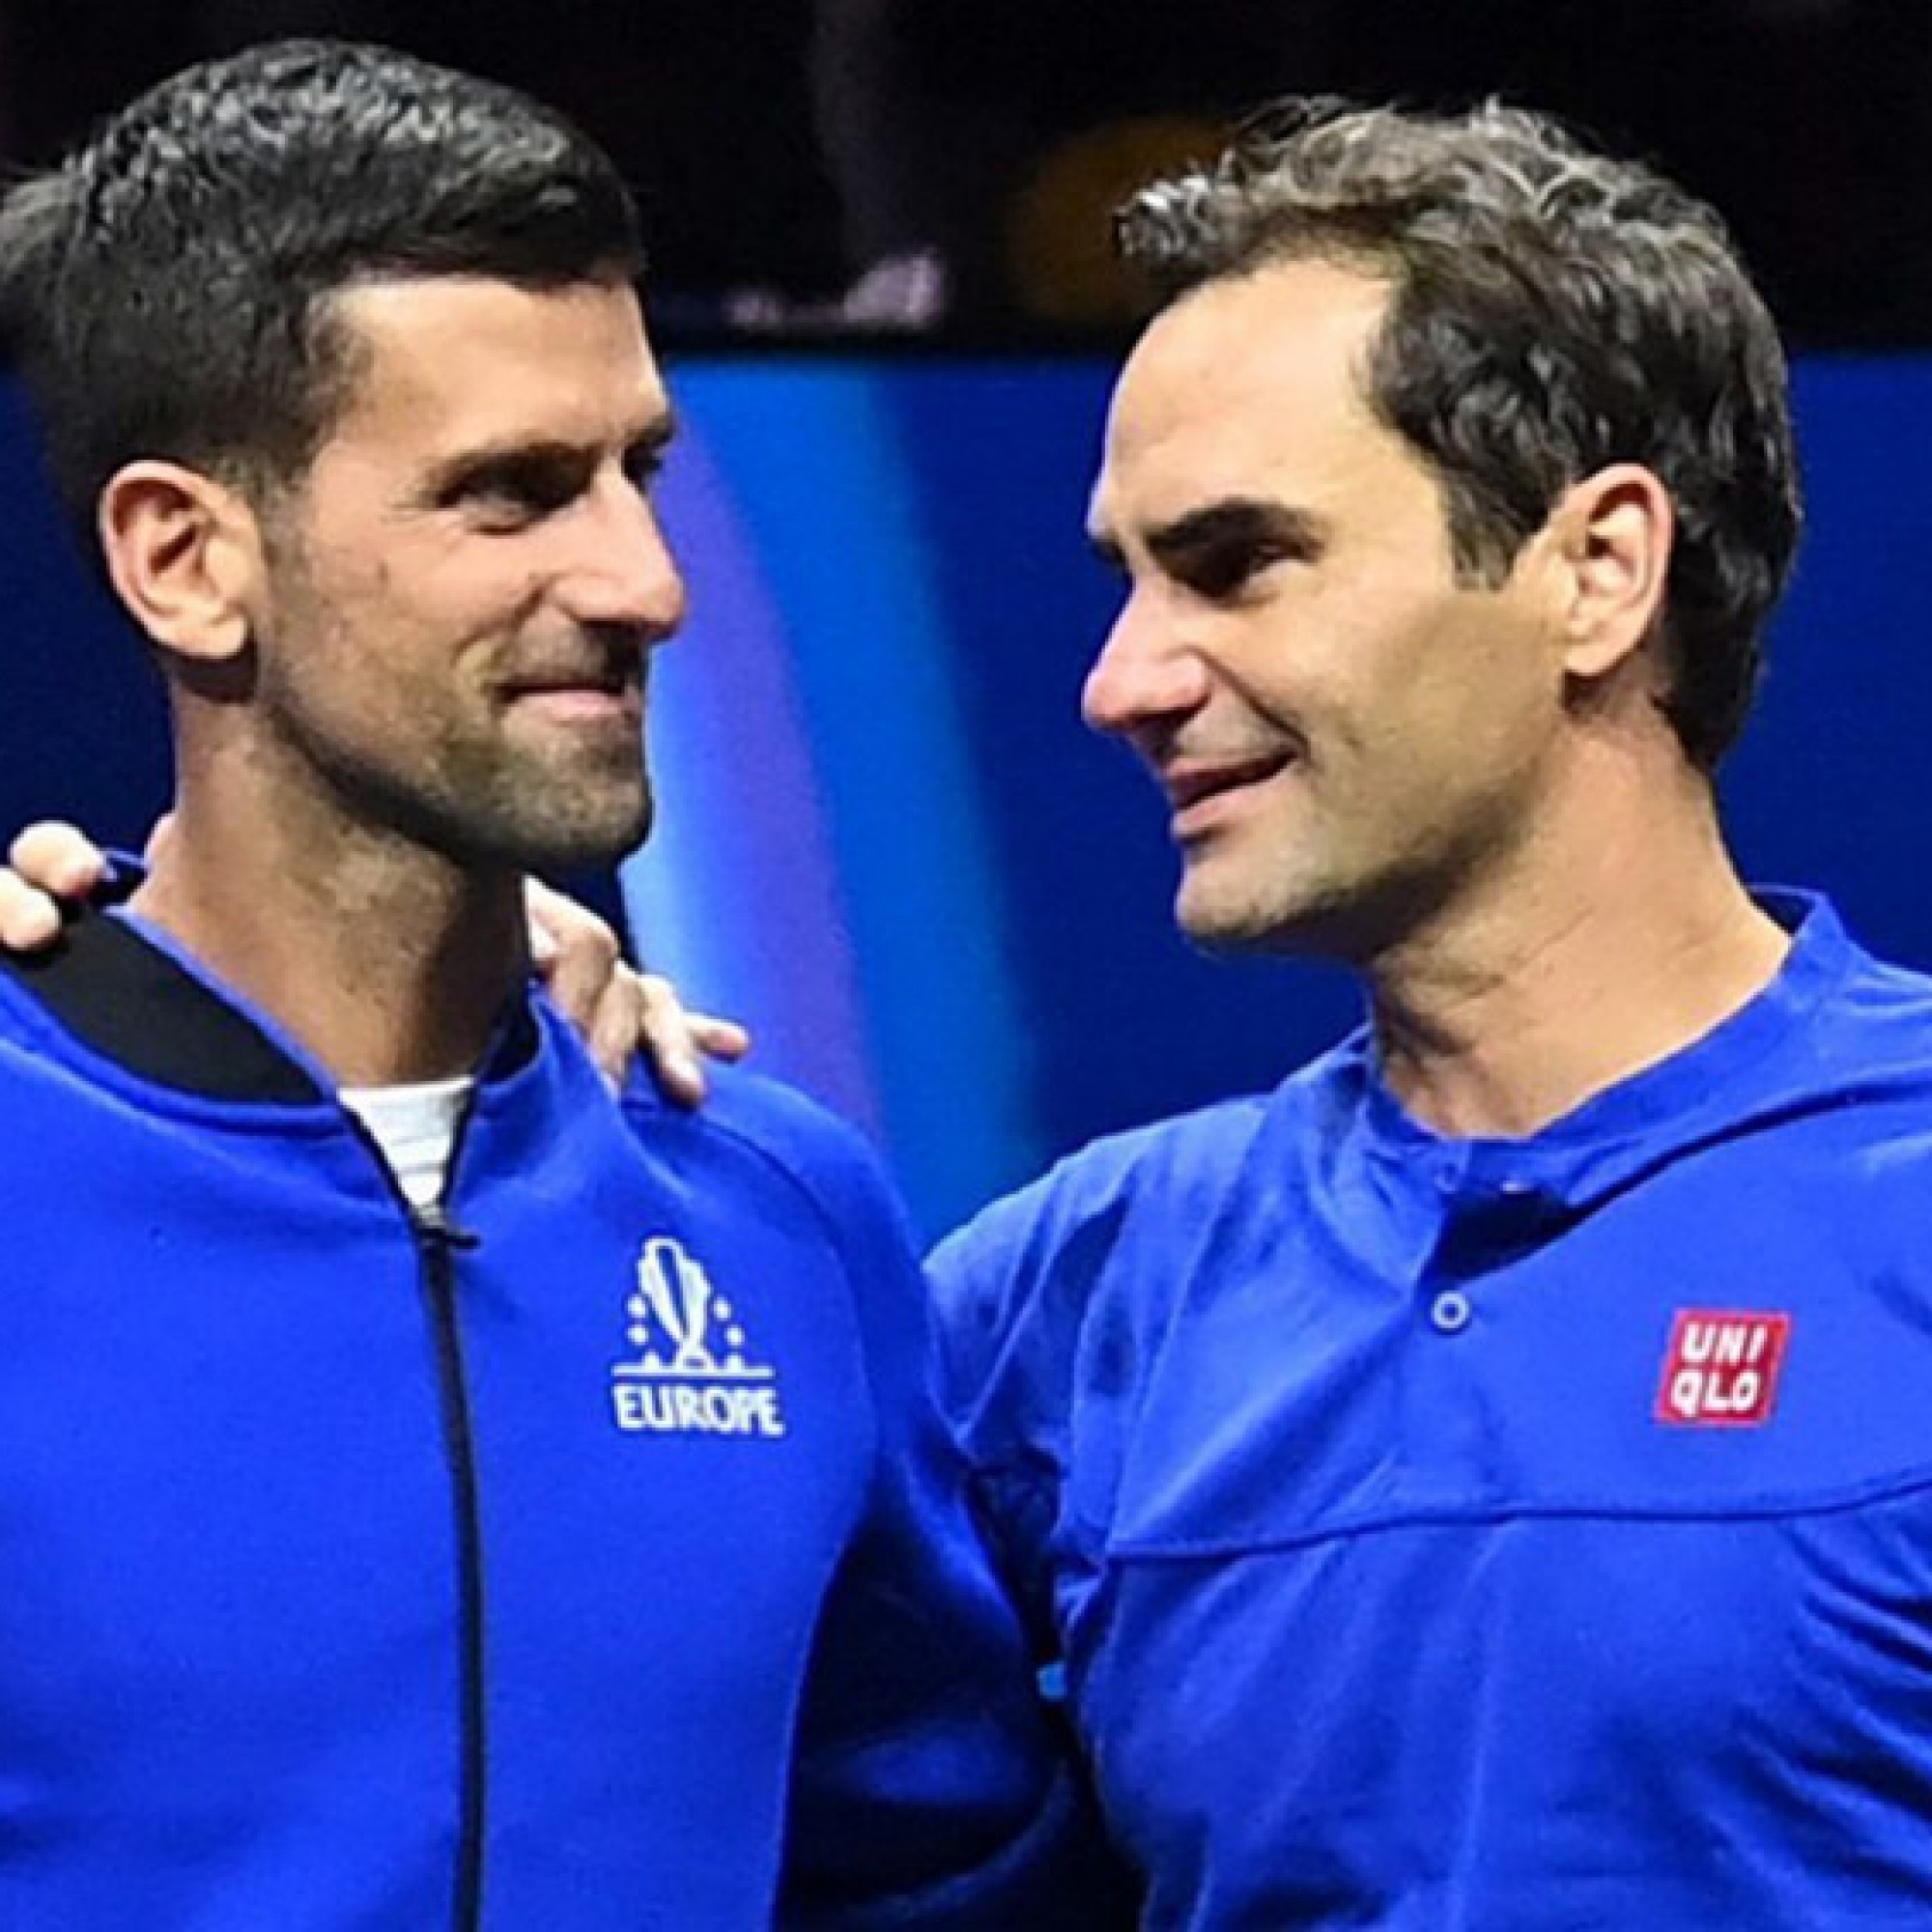  - Nóng nhất thể thao trưa 25/9: Djokovic bất ngờ cầu xin Federer đừng giải nghệ